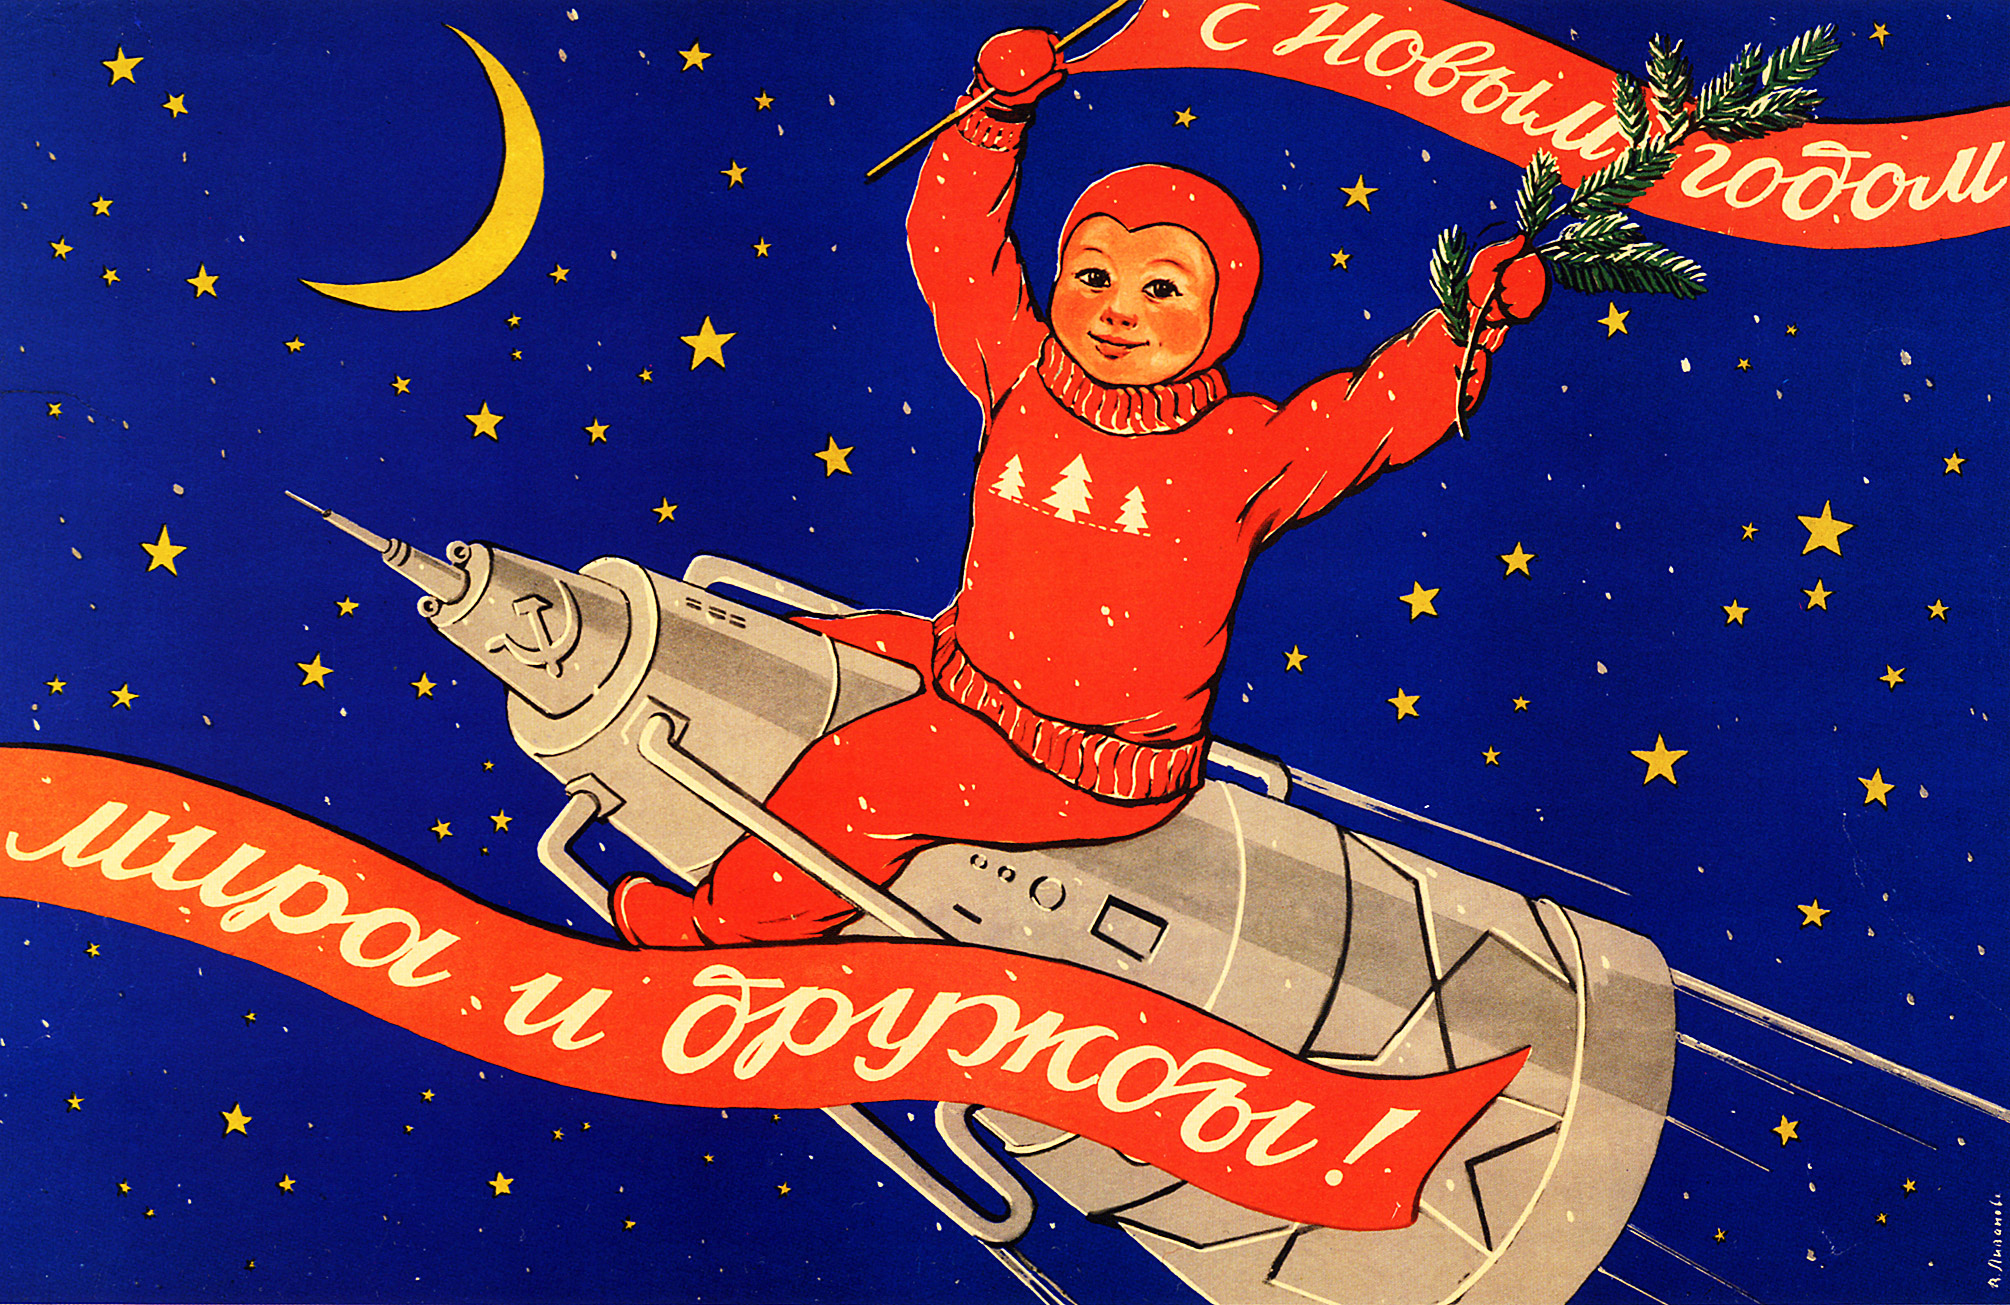 Звёздное небо и космос в картинках - Страница 3 Soviet-space-program-propaganda-poster-29